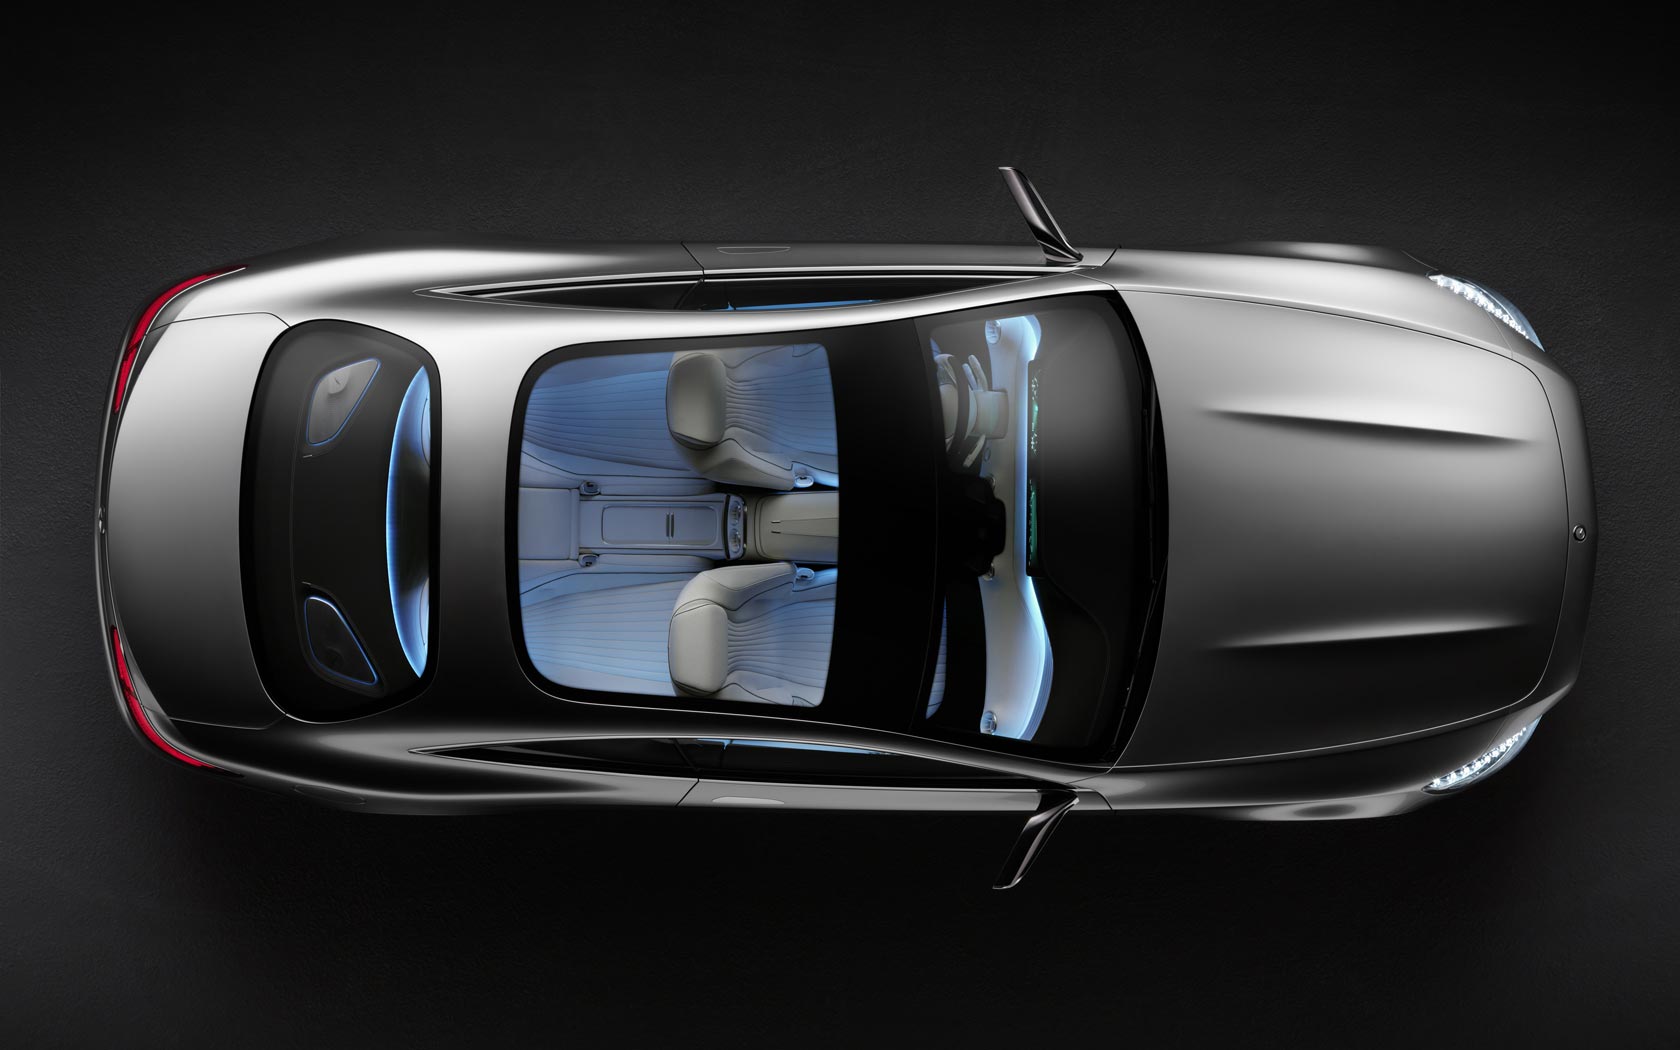  Mercedes S-Class Coupe Concept 